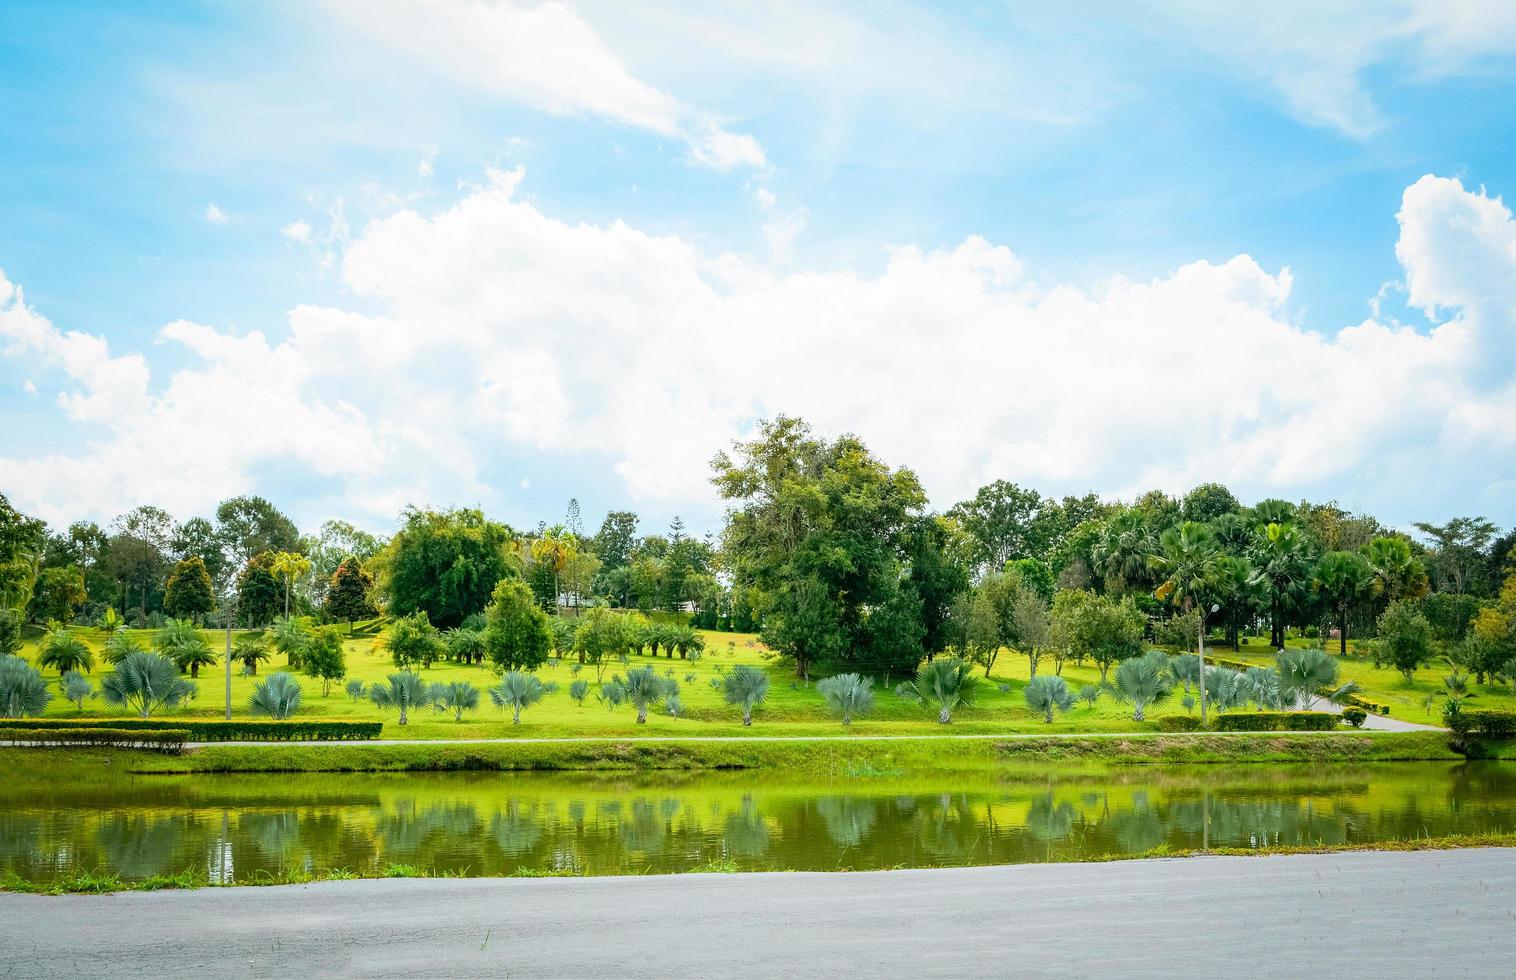 Grüner Teich im Park Sommerlandschaft See mit Palmengarten und blauem Himmelshintergrund foto